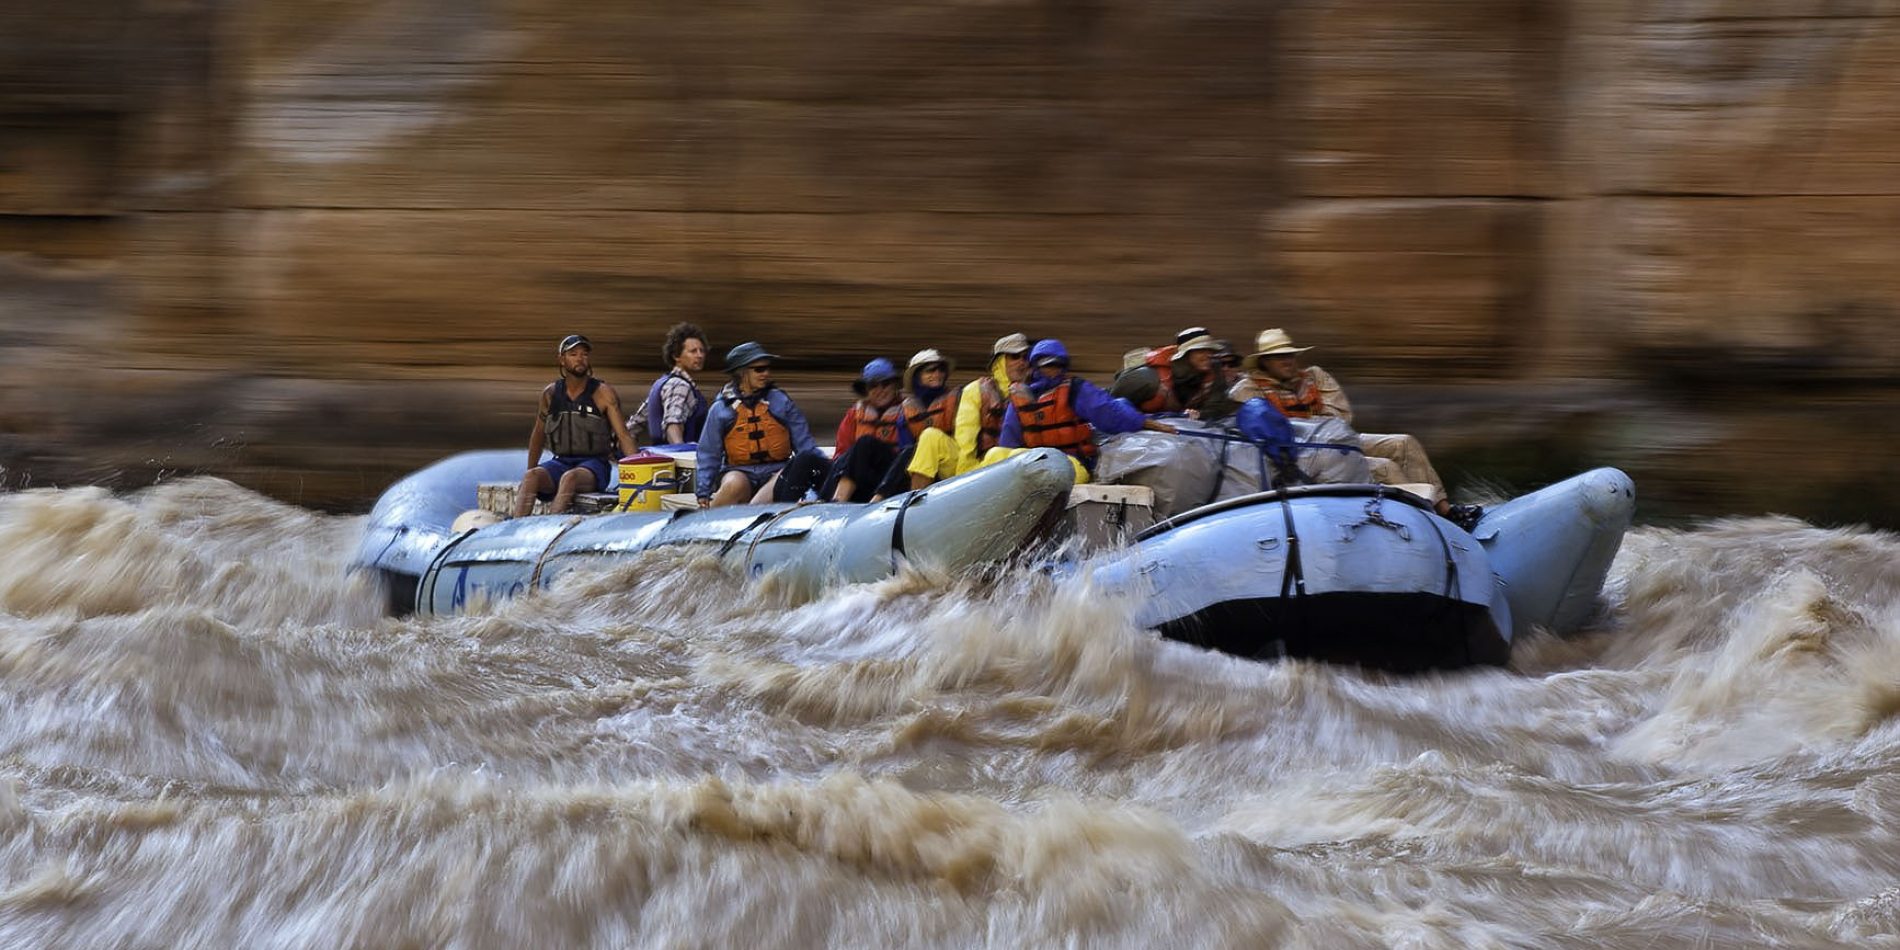 Do I Really Need Rain Gear? - Grand Canyon Rafting